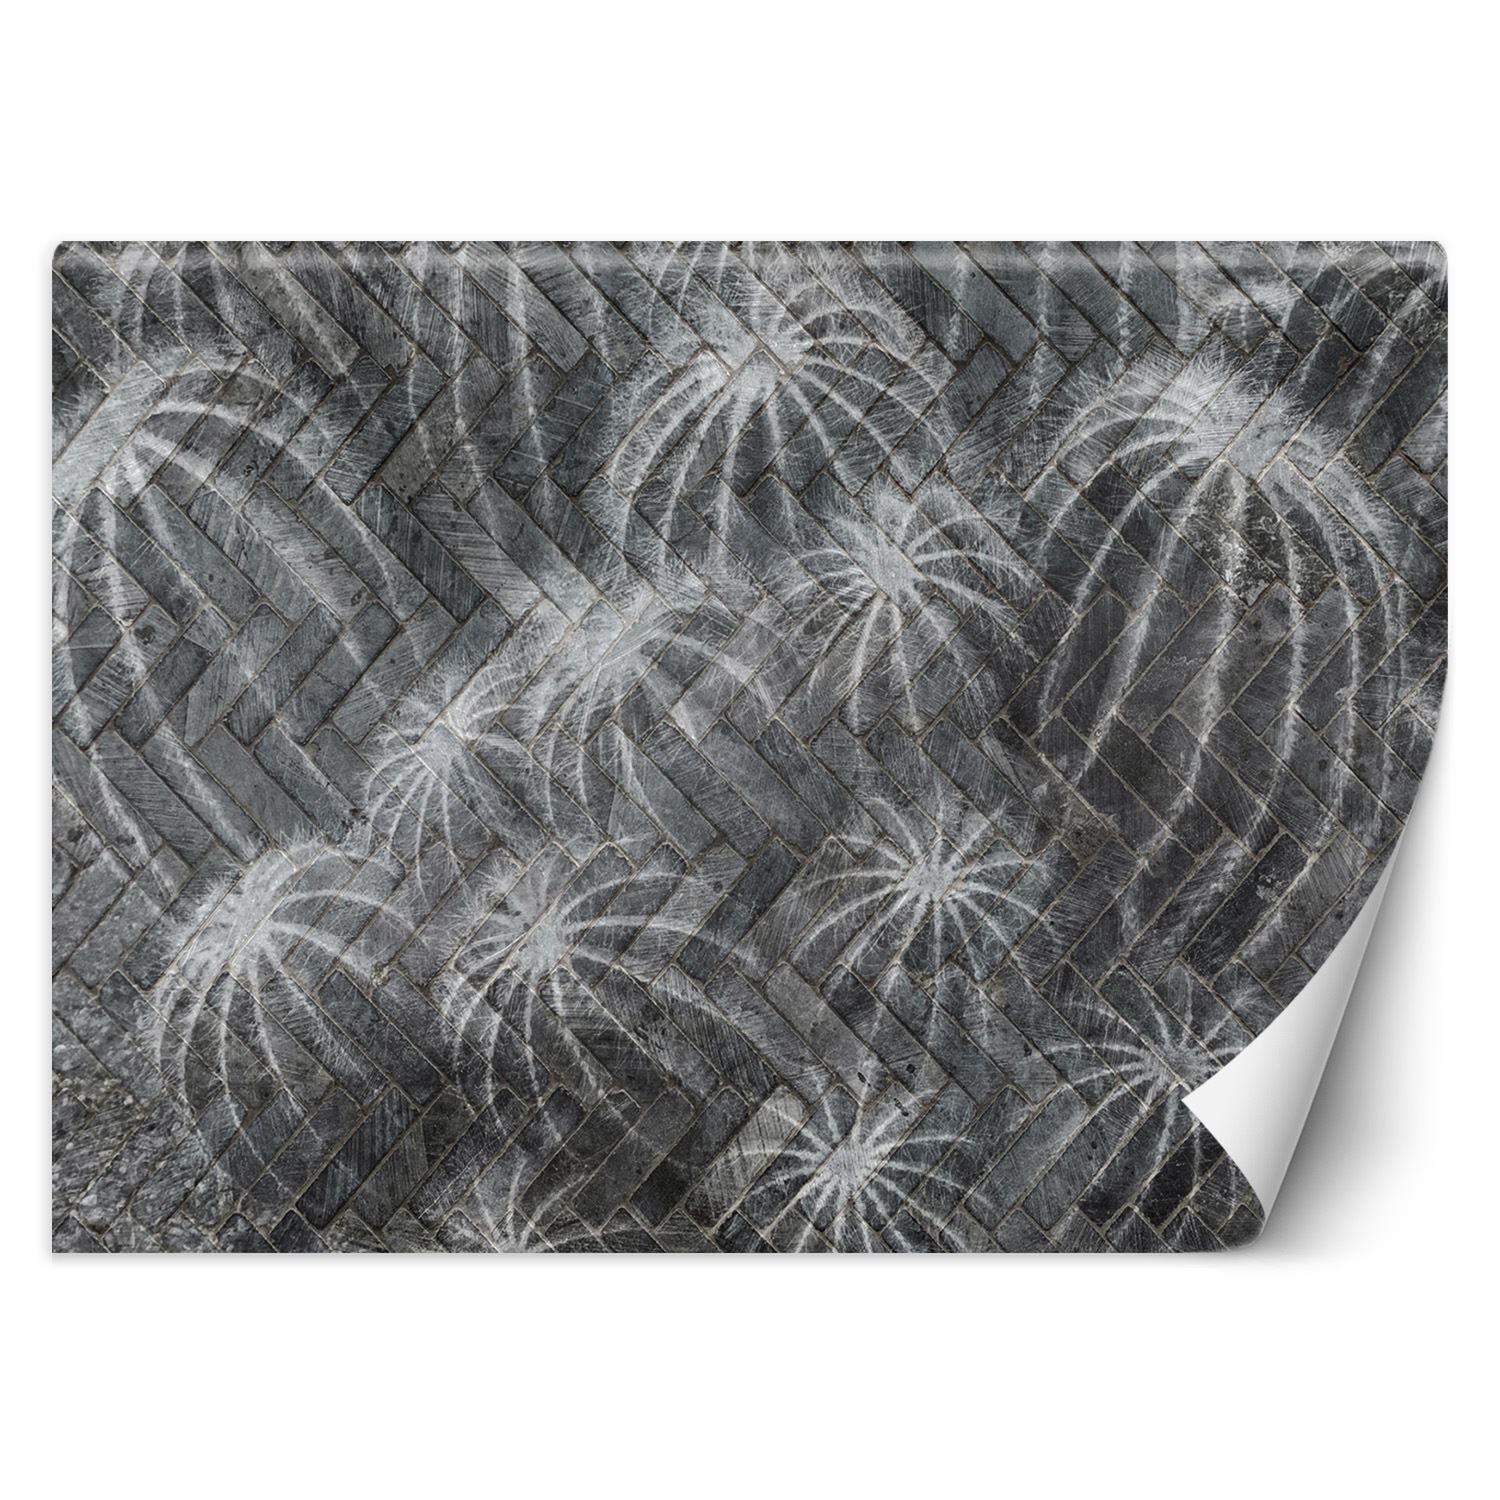 Trend24 – Behang – Cactussen In Grijs – Behangpapier – Behang Woonkamer – Fotobehang – 250x175x2 cm – Incl. behanglijm